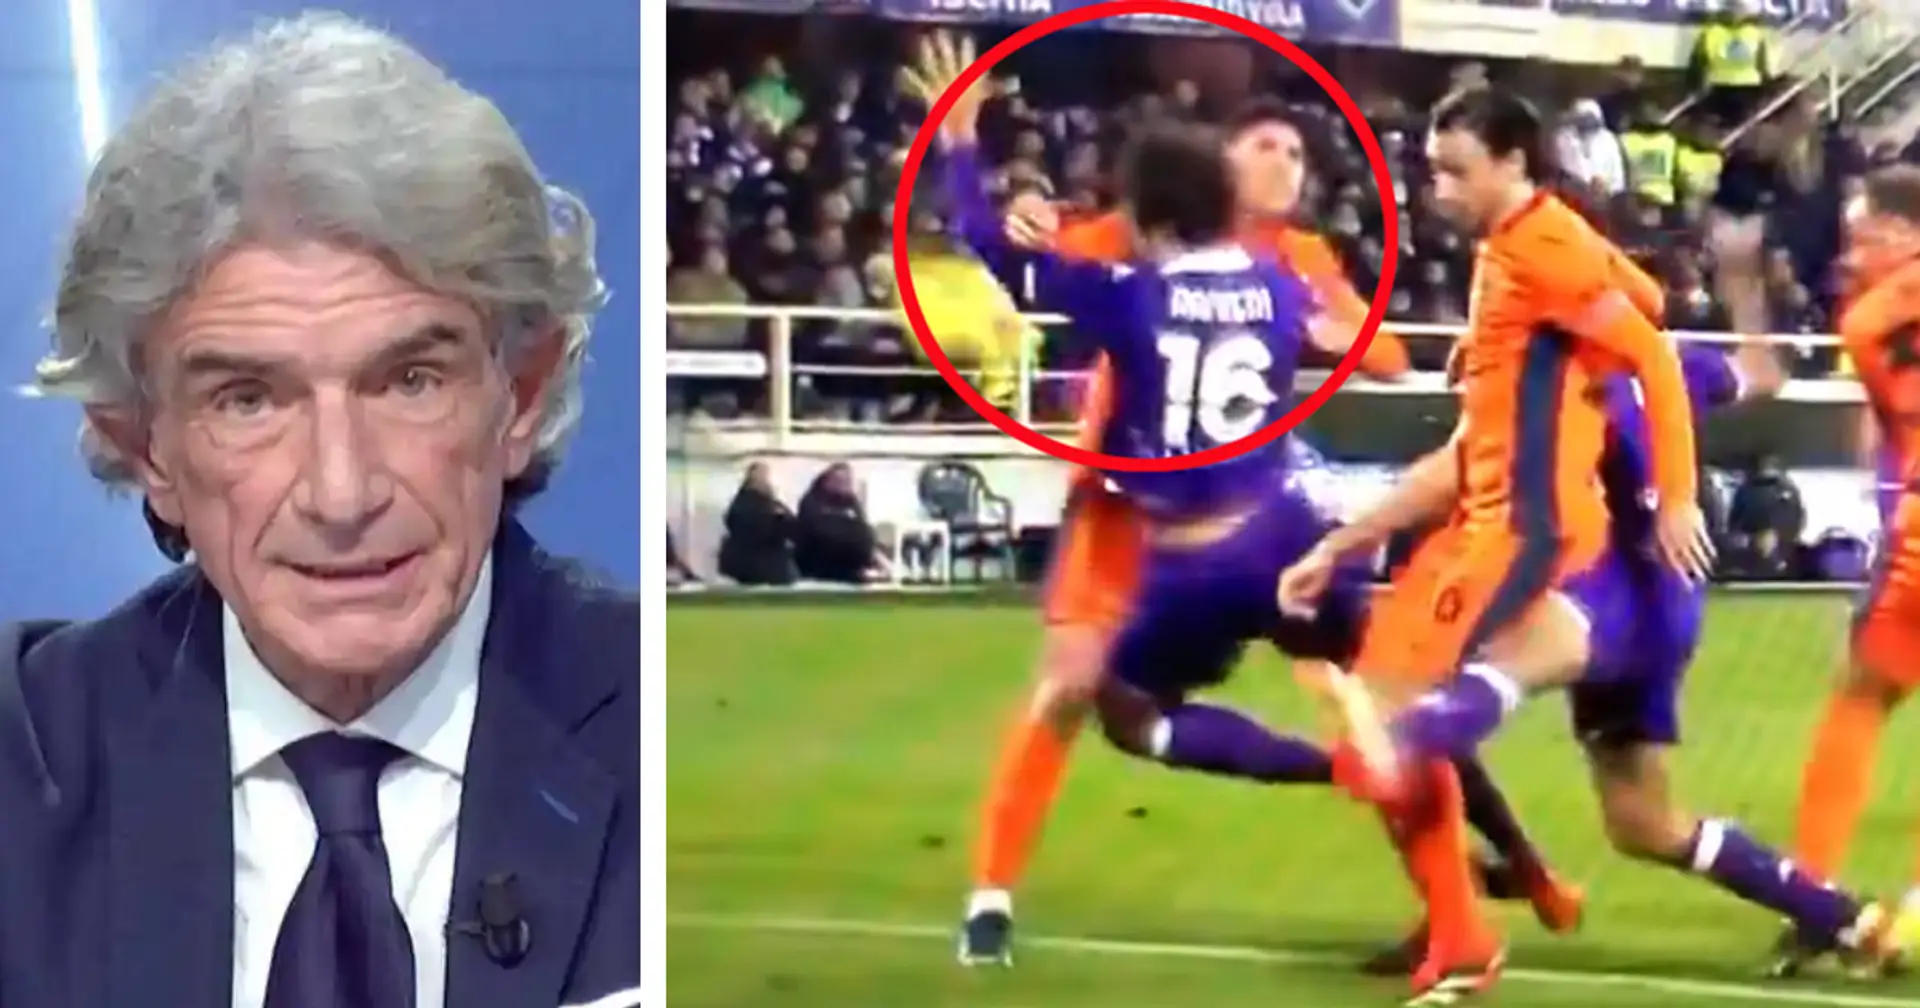 "Non è rigore": il verdetto della moviola sul contatto tra Bastoni e Ranieri in Fiorentina-Inter